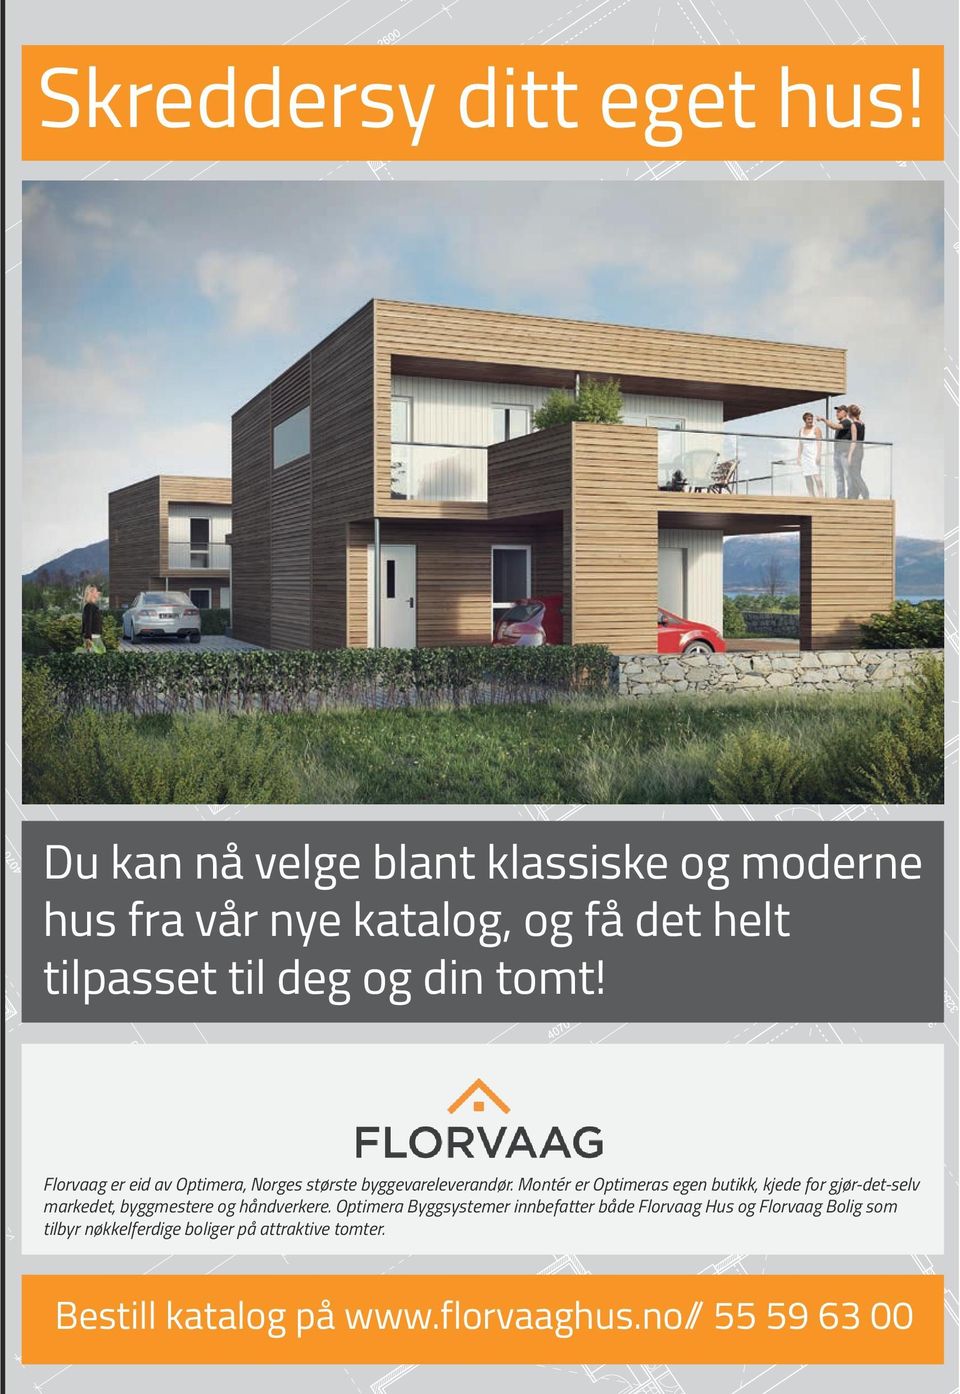 Florvaag er eid av Optimera, Norges største byggevareleverandør.